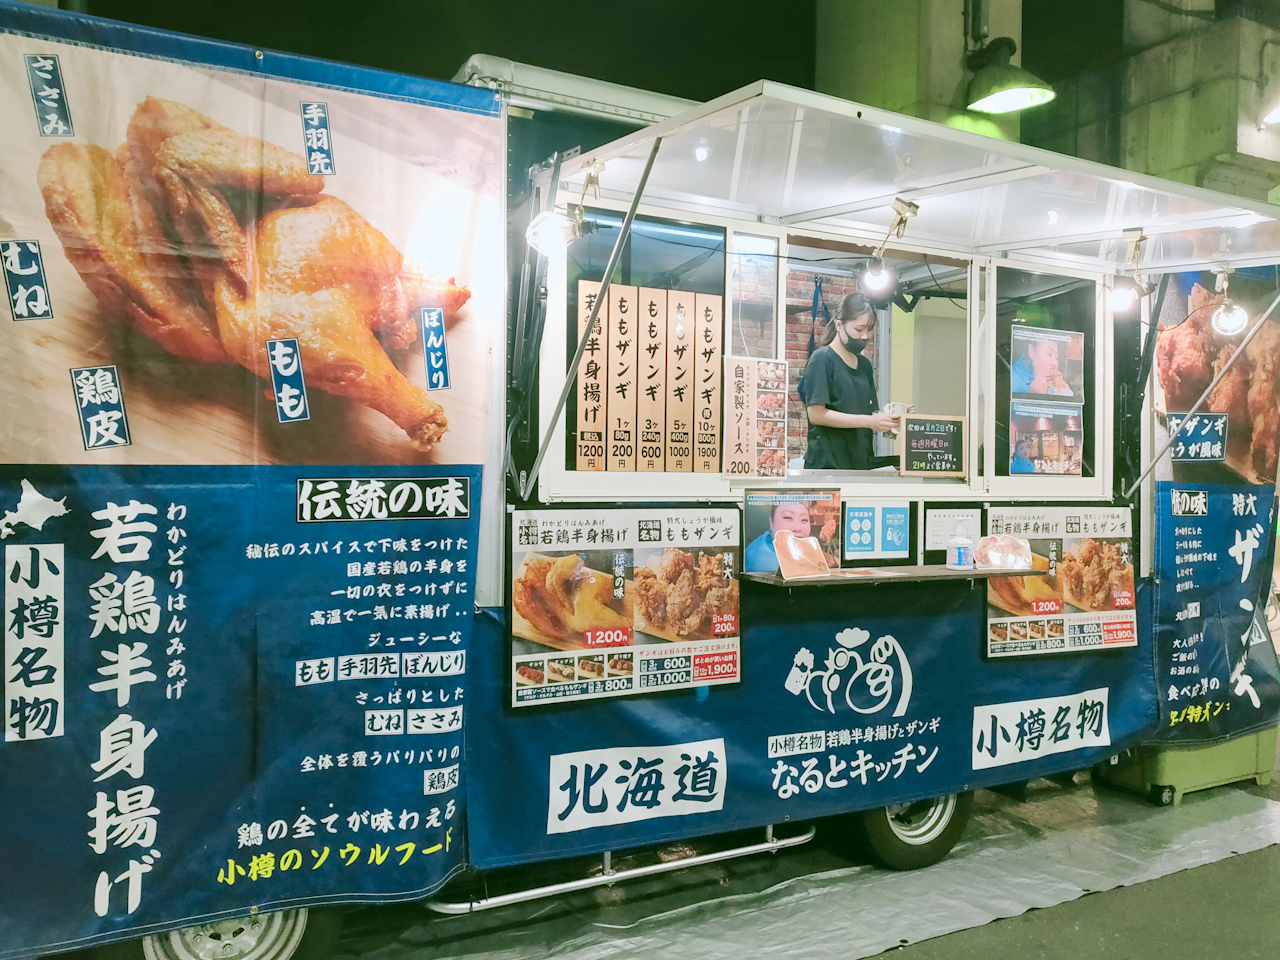 北海道 小樽名物「若鶏半身揚げ」と「ザンギ」のお店『なるとキッチン』